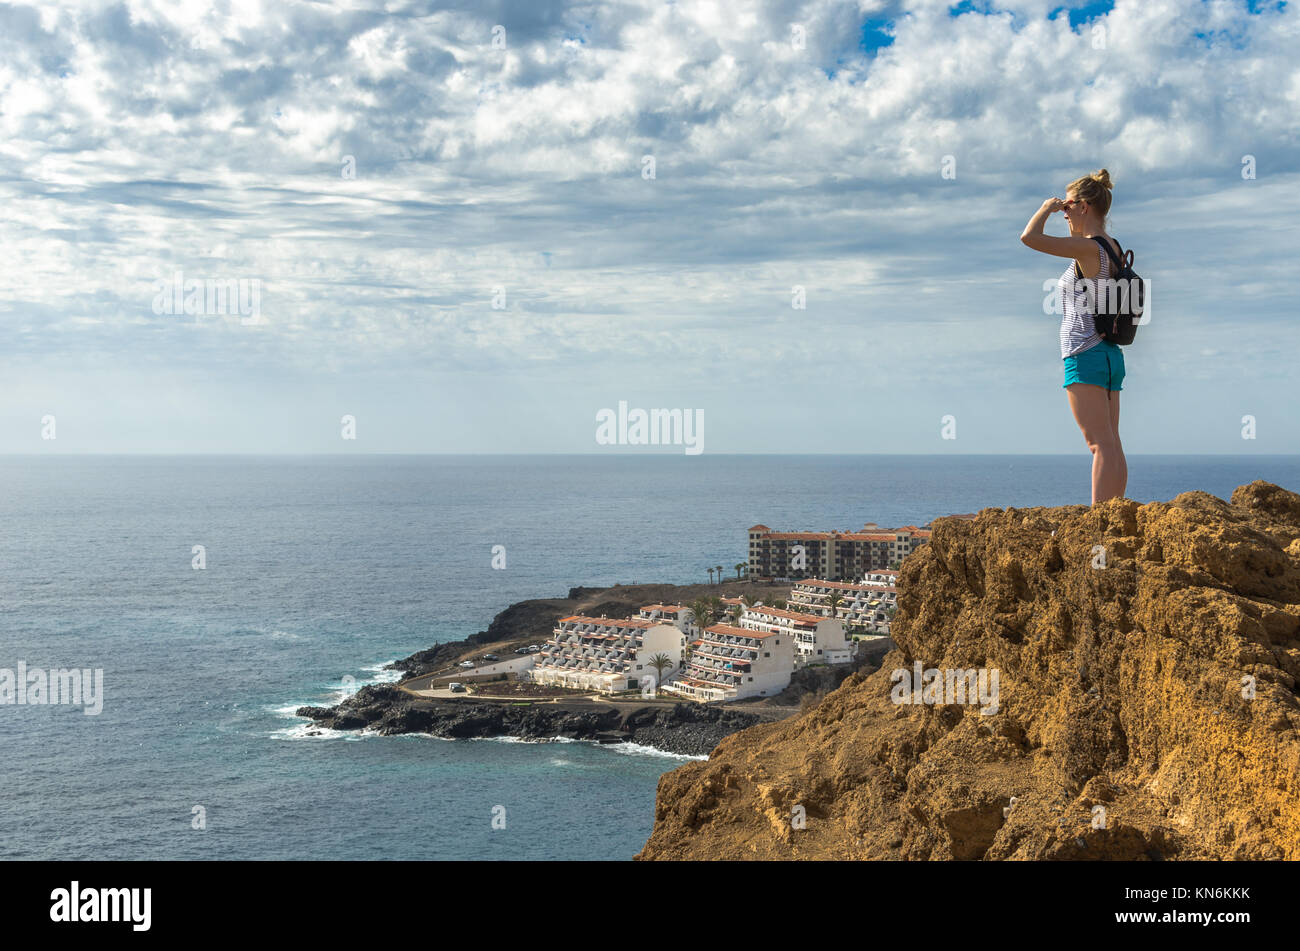 Giovane donna su una scogliera guardando attraverso l'Oceano Atlantico e il villaggio turistico di Costa Del Silencion in Tenerife, Isole Canarie, Spagna Foto Stock